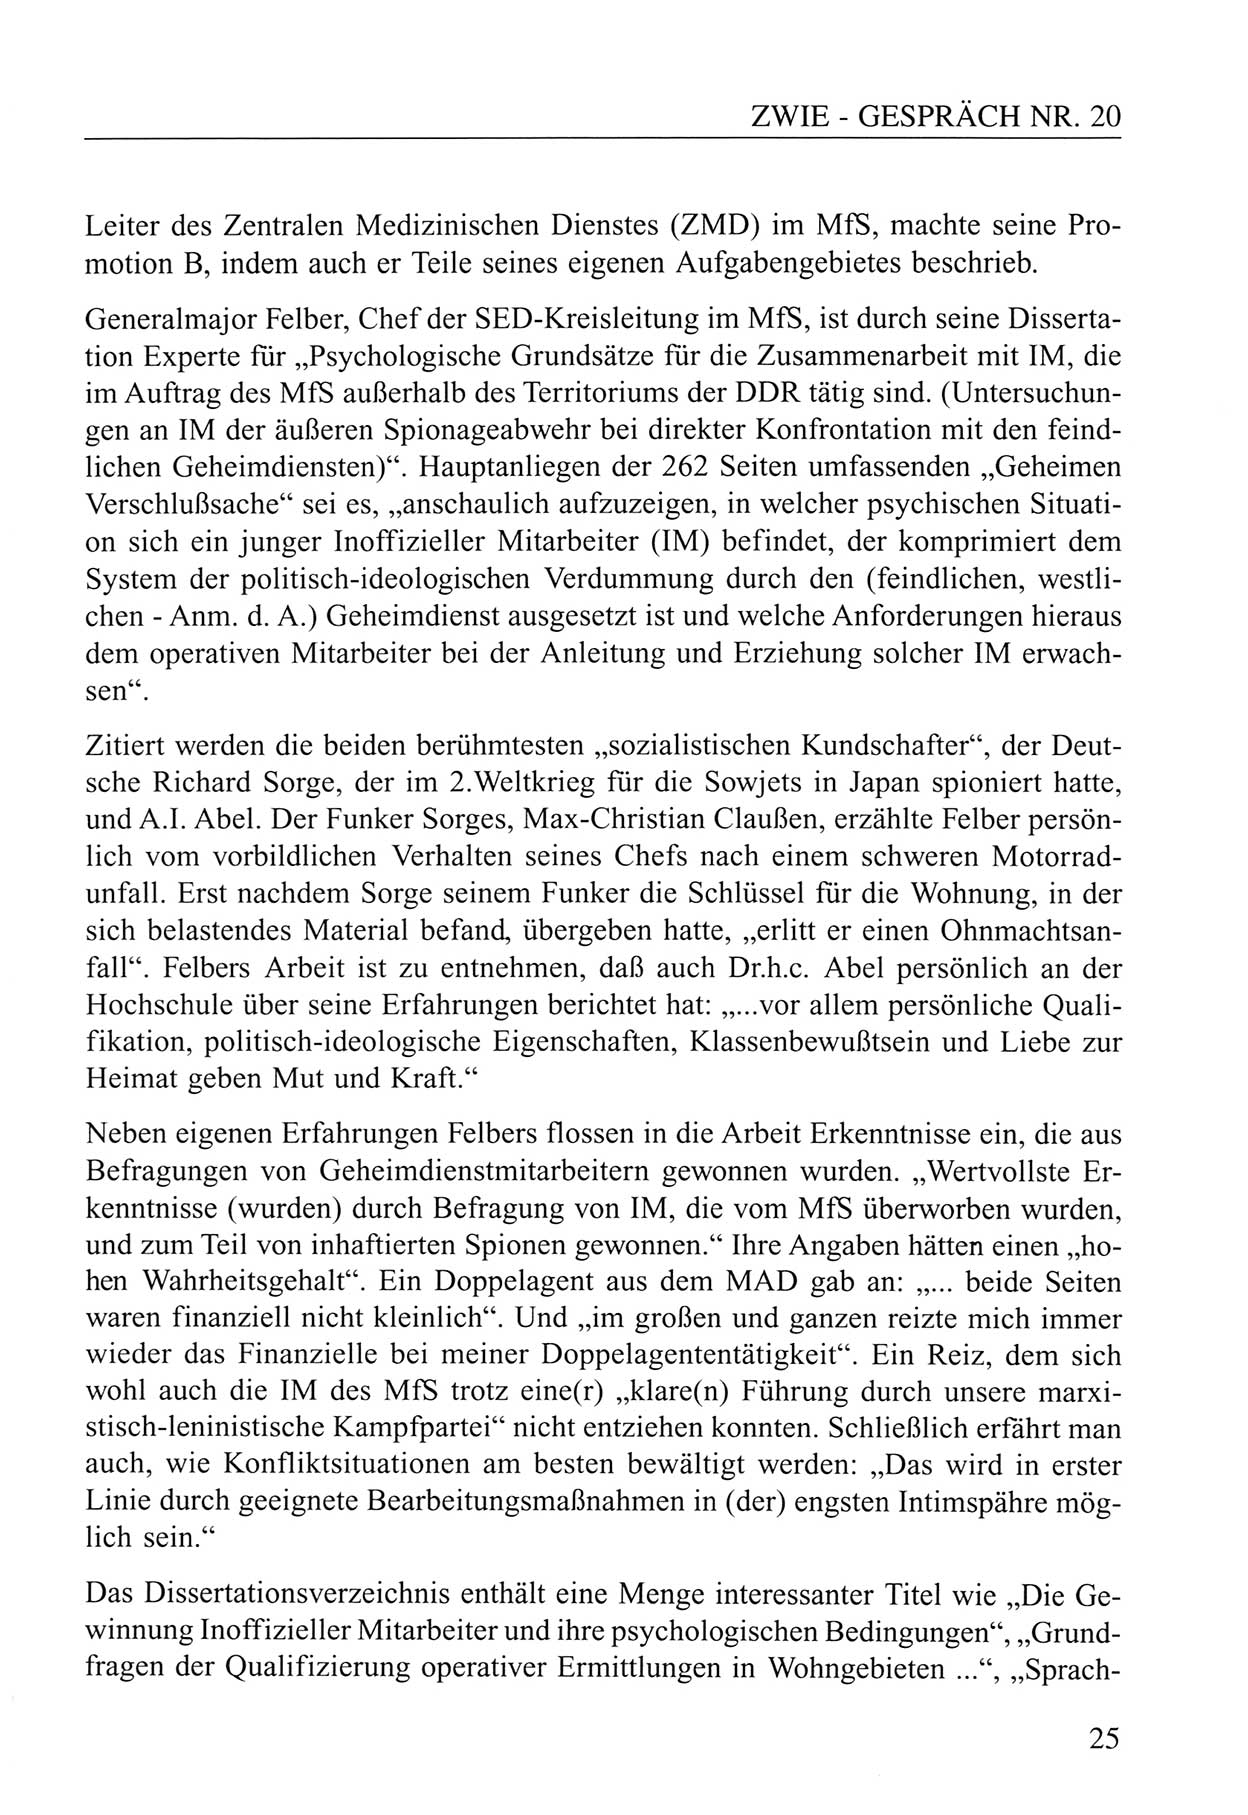 Zwie-Gespräch, Beiträge zum Umgang mit der Staatssicherheits-Vergangenheit [Deutsche Demokratische Republik (DDR)], Ausgabe Nr. 20, Berlin 1994, Seite 25 (Zwie-Gespr. Ausg. 20 1994, S. 25)